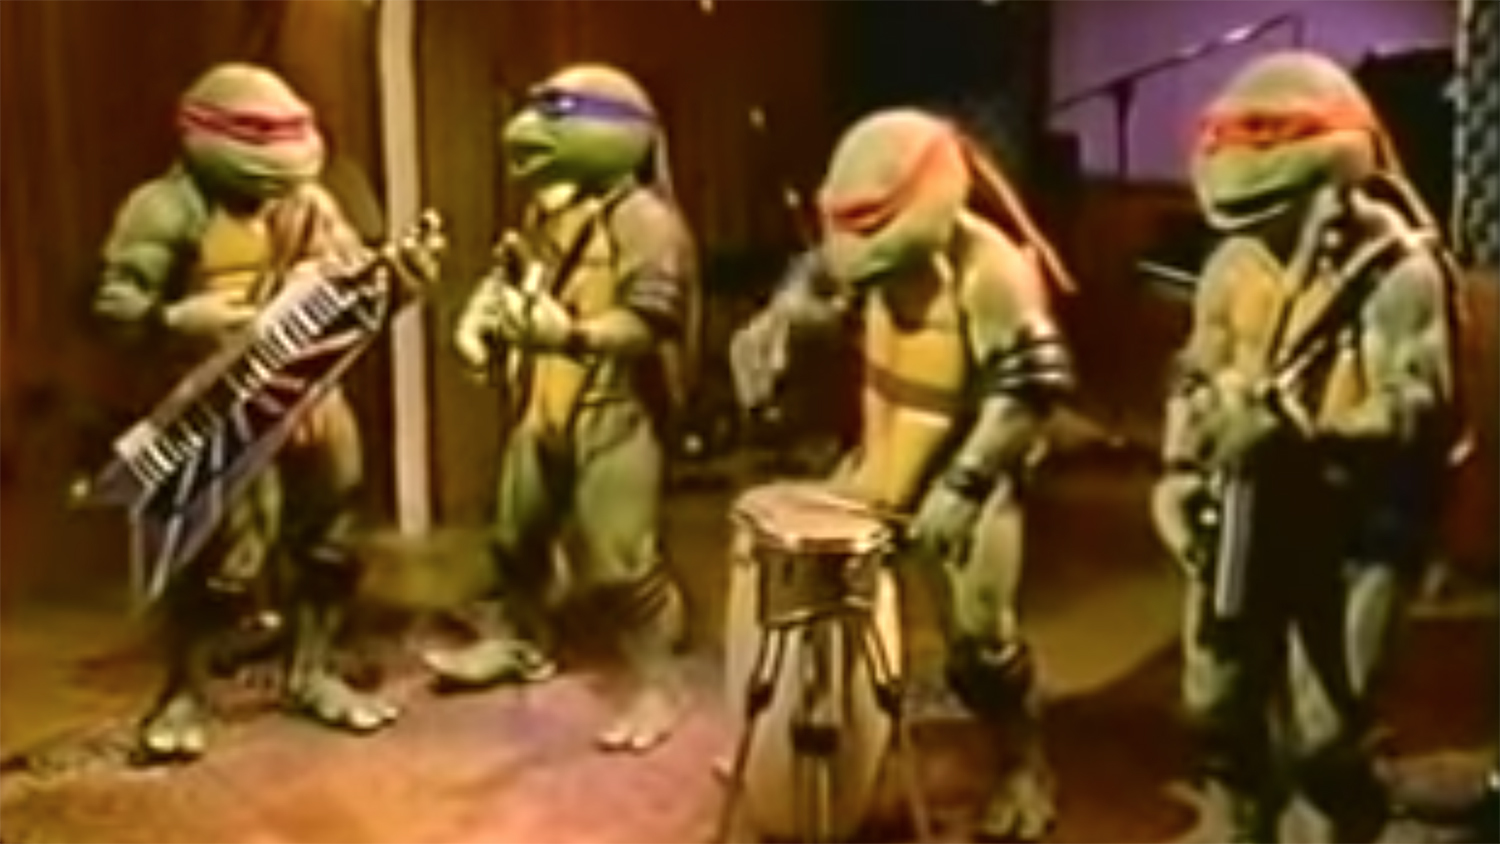 Revisiting The Teenage Mutant Ninja Turtles Movie On Its 30th